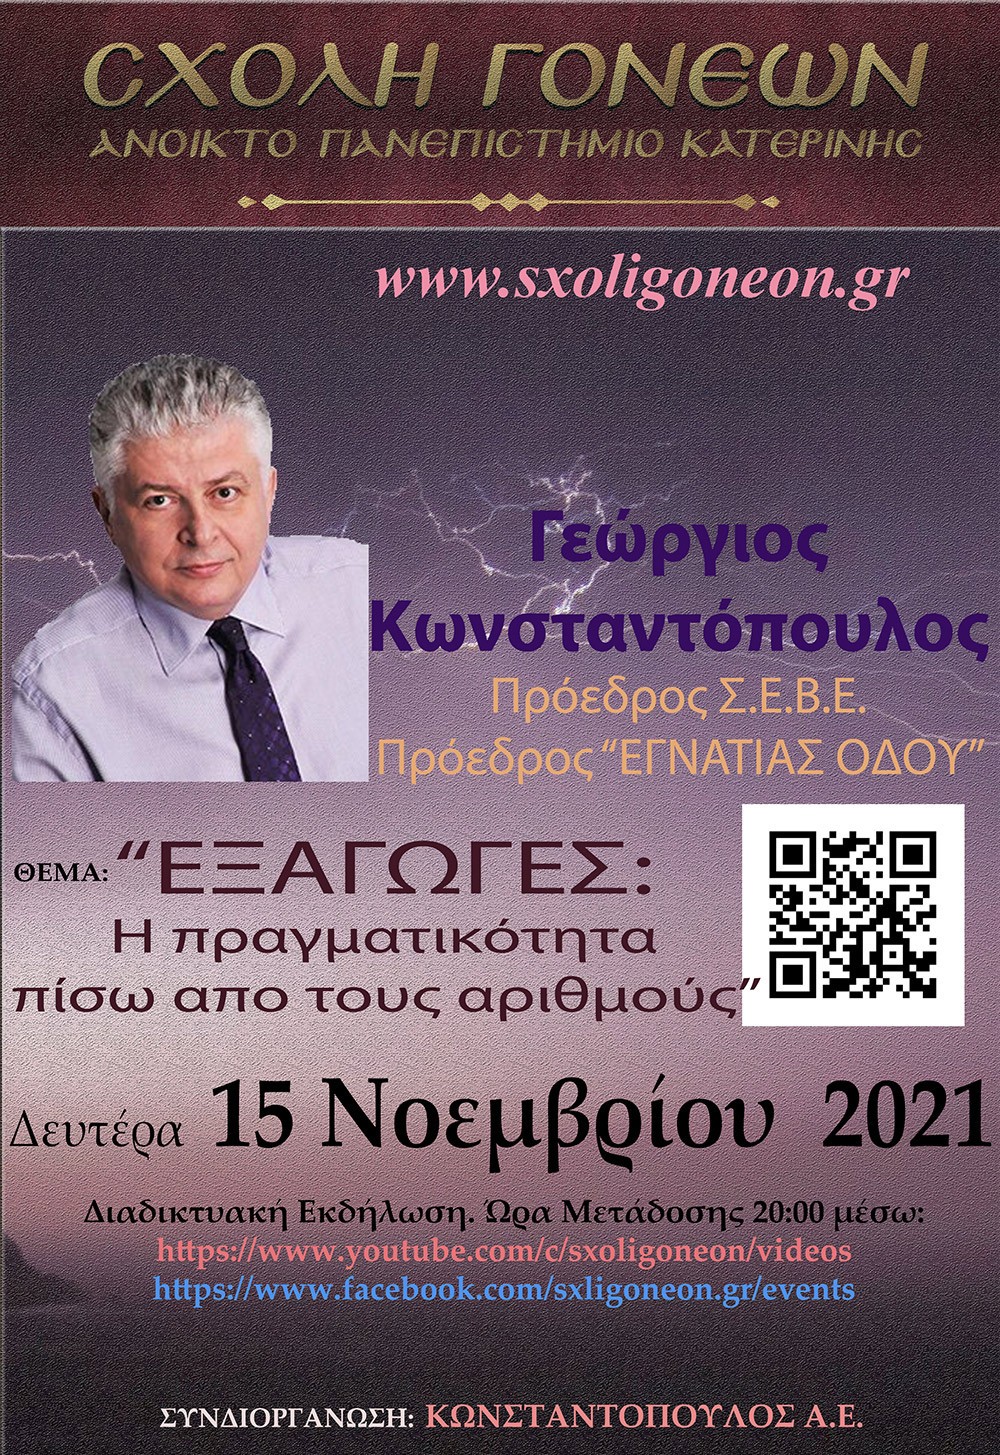 Η επόμενη εκδήλωση θα γίνει την Δευτέρα 15-11-2021 με επίσημο ομιλητή και καλεσμένο τον πρώην Υφυπουργό Υγείας, Πρόεδρο του Σ.Ε.Β.Ε & Πρόεδρο της «Εγνατίας Οδού» Δρ. Γεώργιο Κωνσταντόπουλο με θέμα: «ΕΞΑΓΩΓΕΣ: Η Πραγματικότητα πίσω από τους αριθμούς»